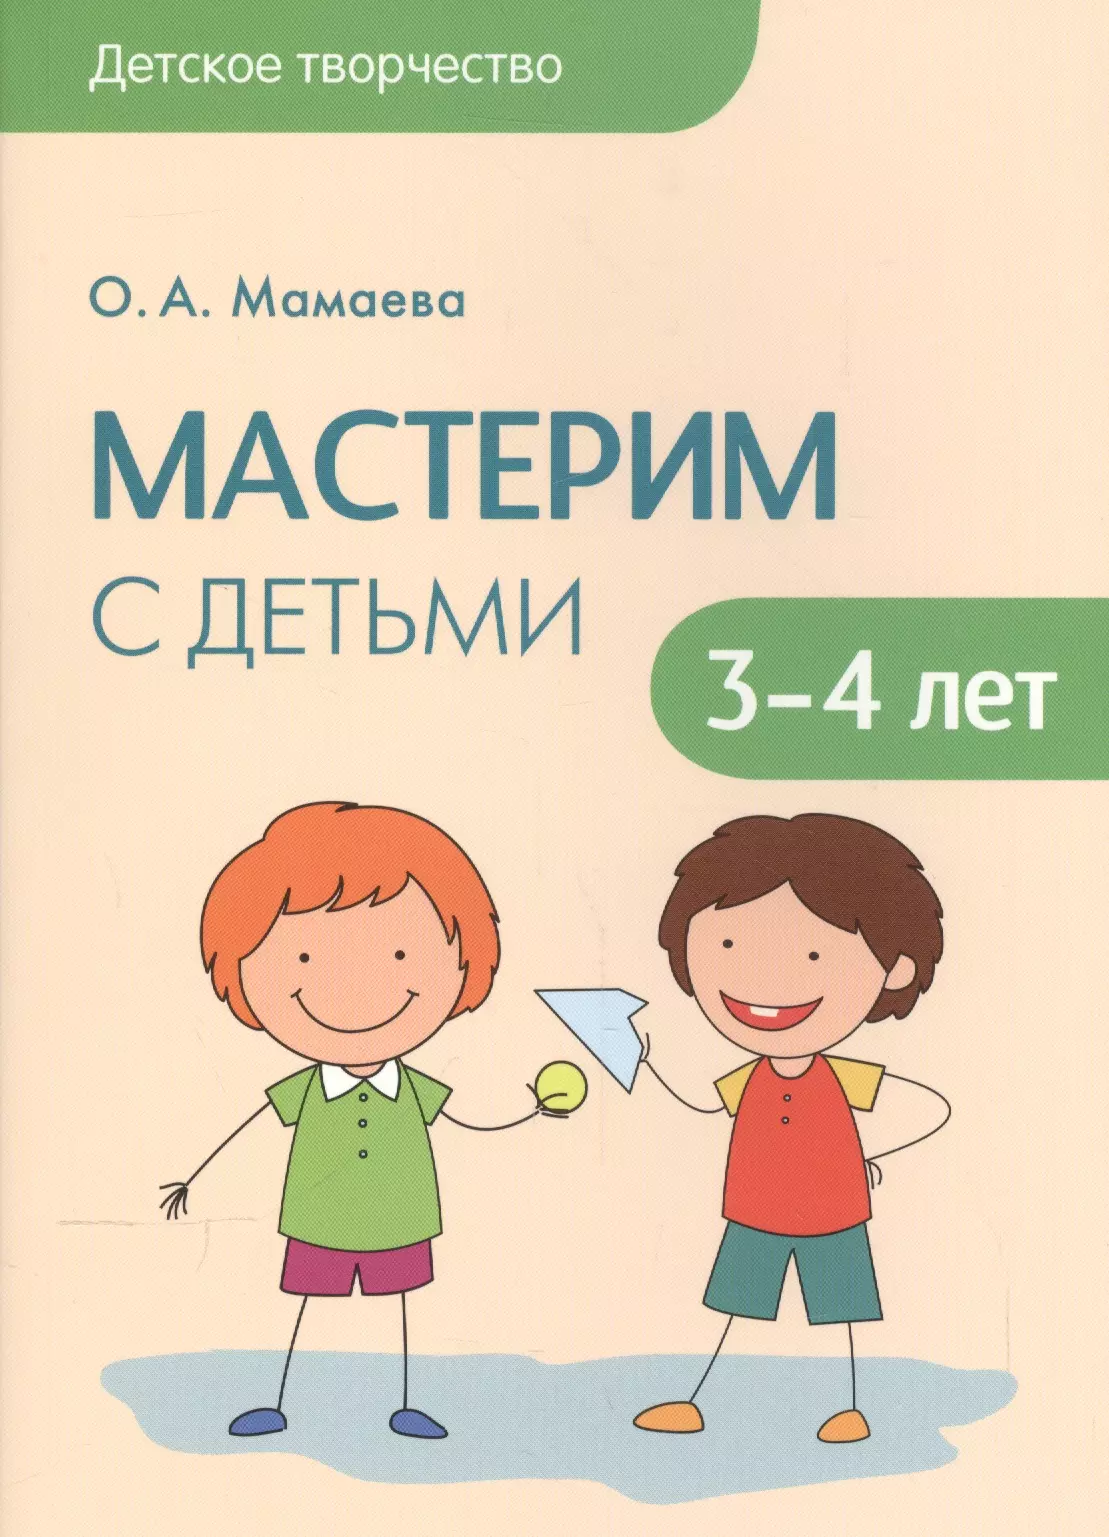 Мамаева Ольга Александровна - Детское творчество. Мастерим с детьми 3-4 лет